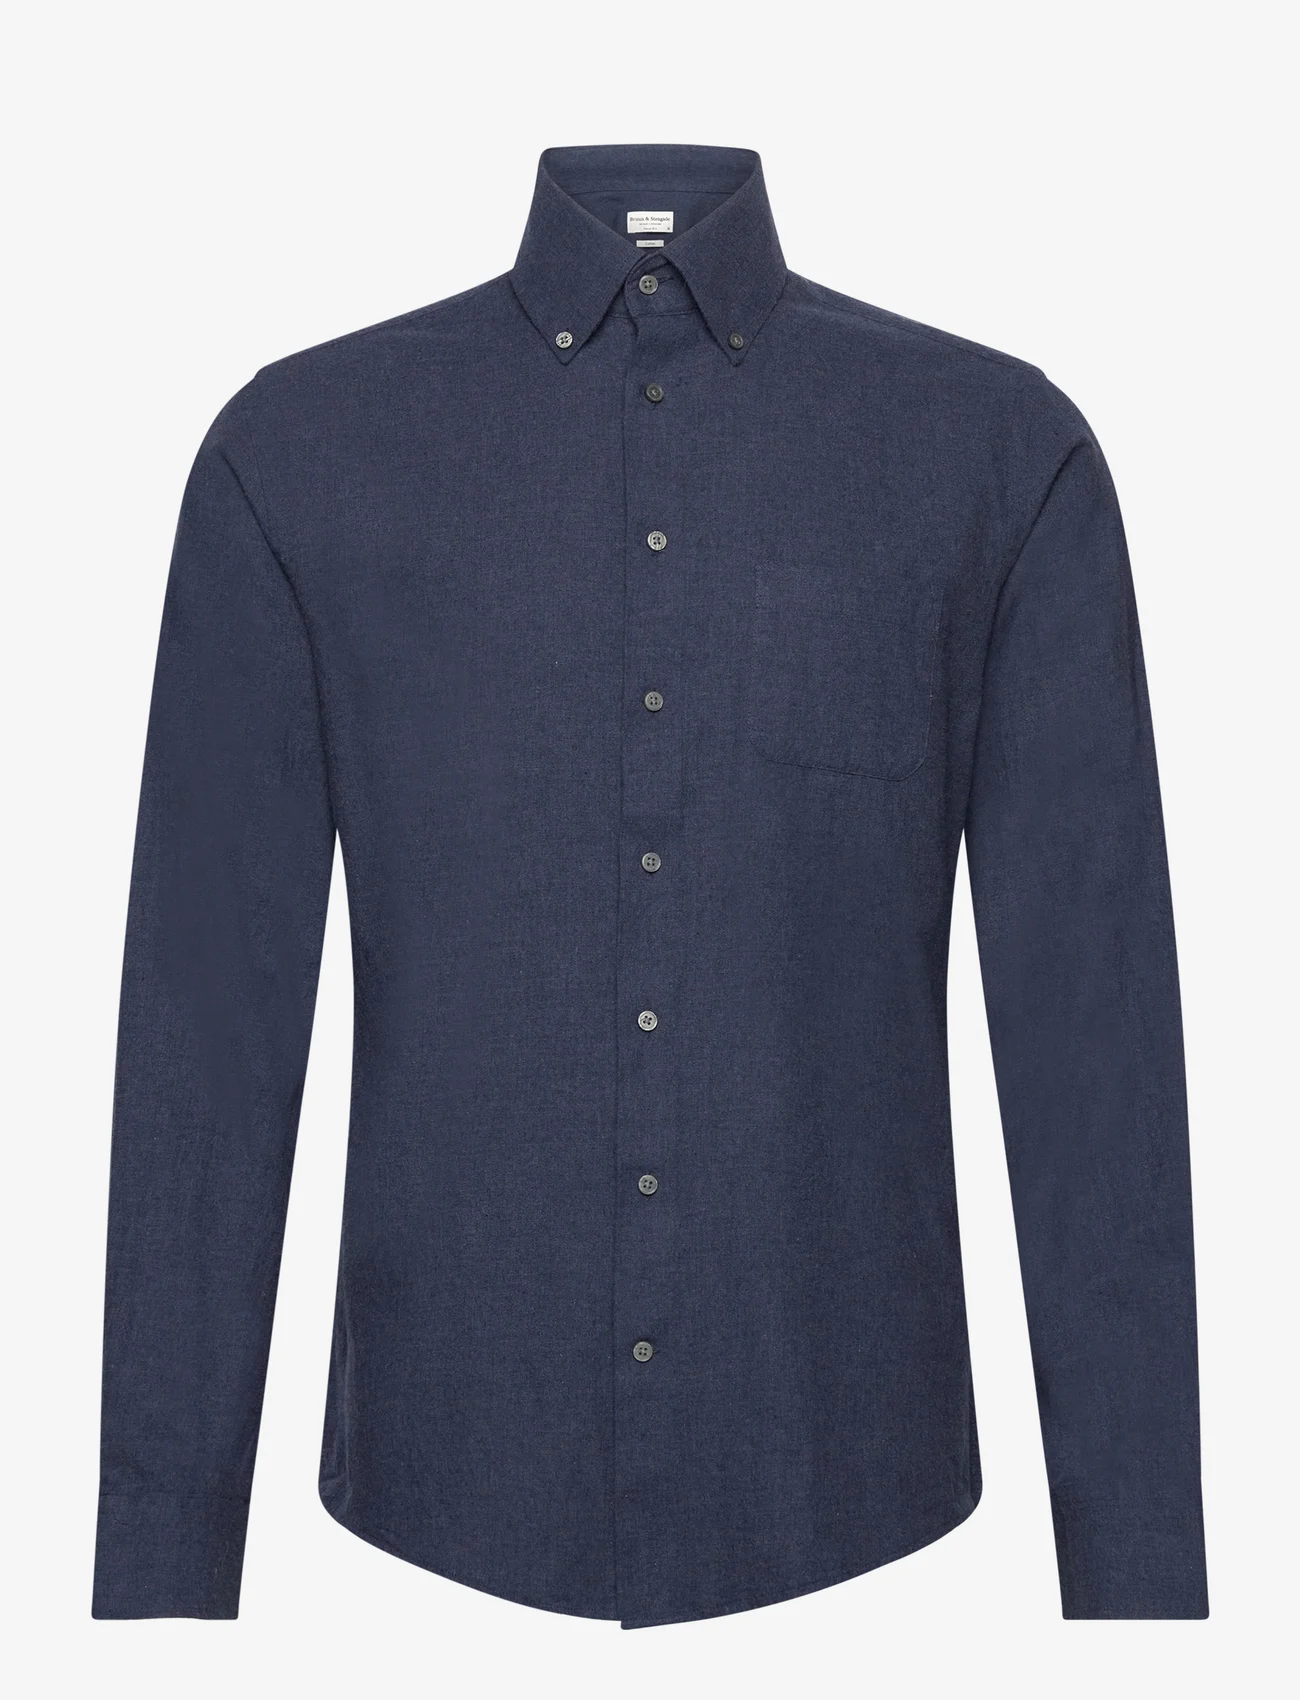 Bruun & Stengade - BS Floyd Casual Slim Fit Shirt - basic skjorter - blue - 0